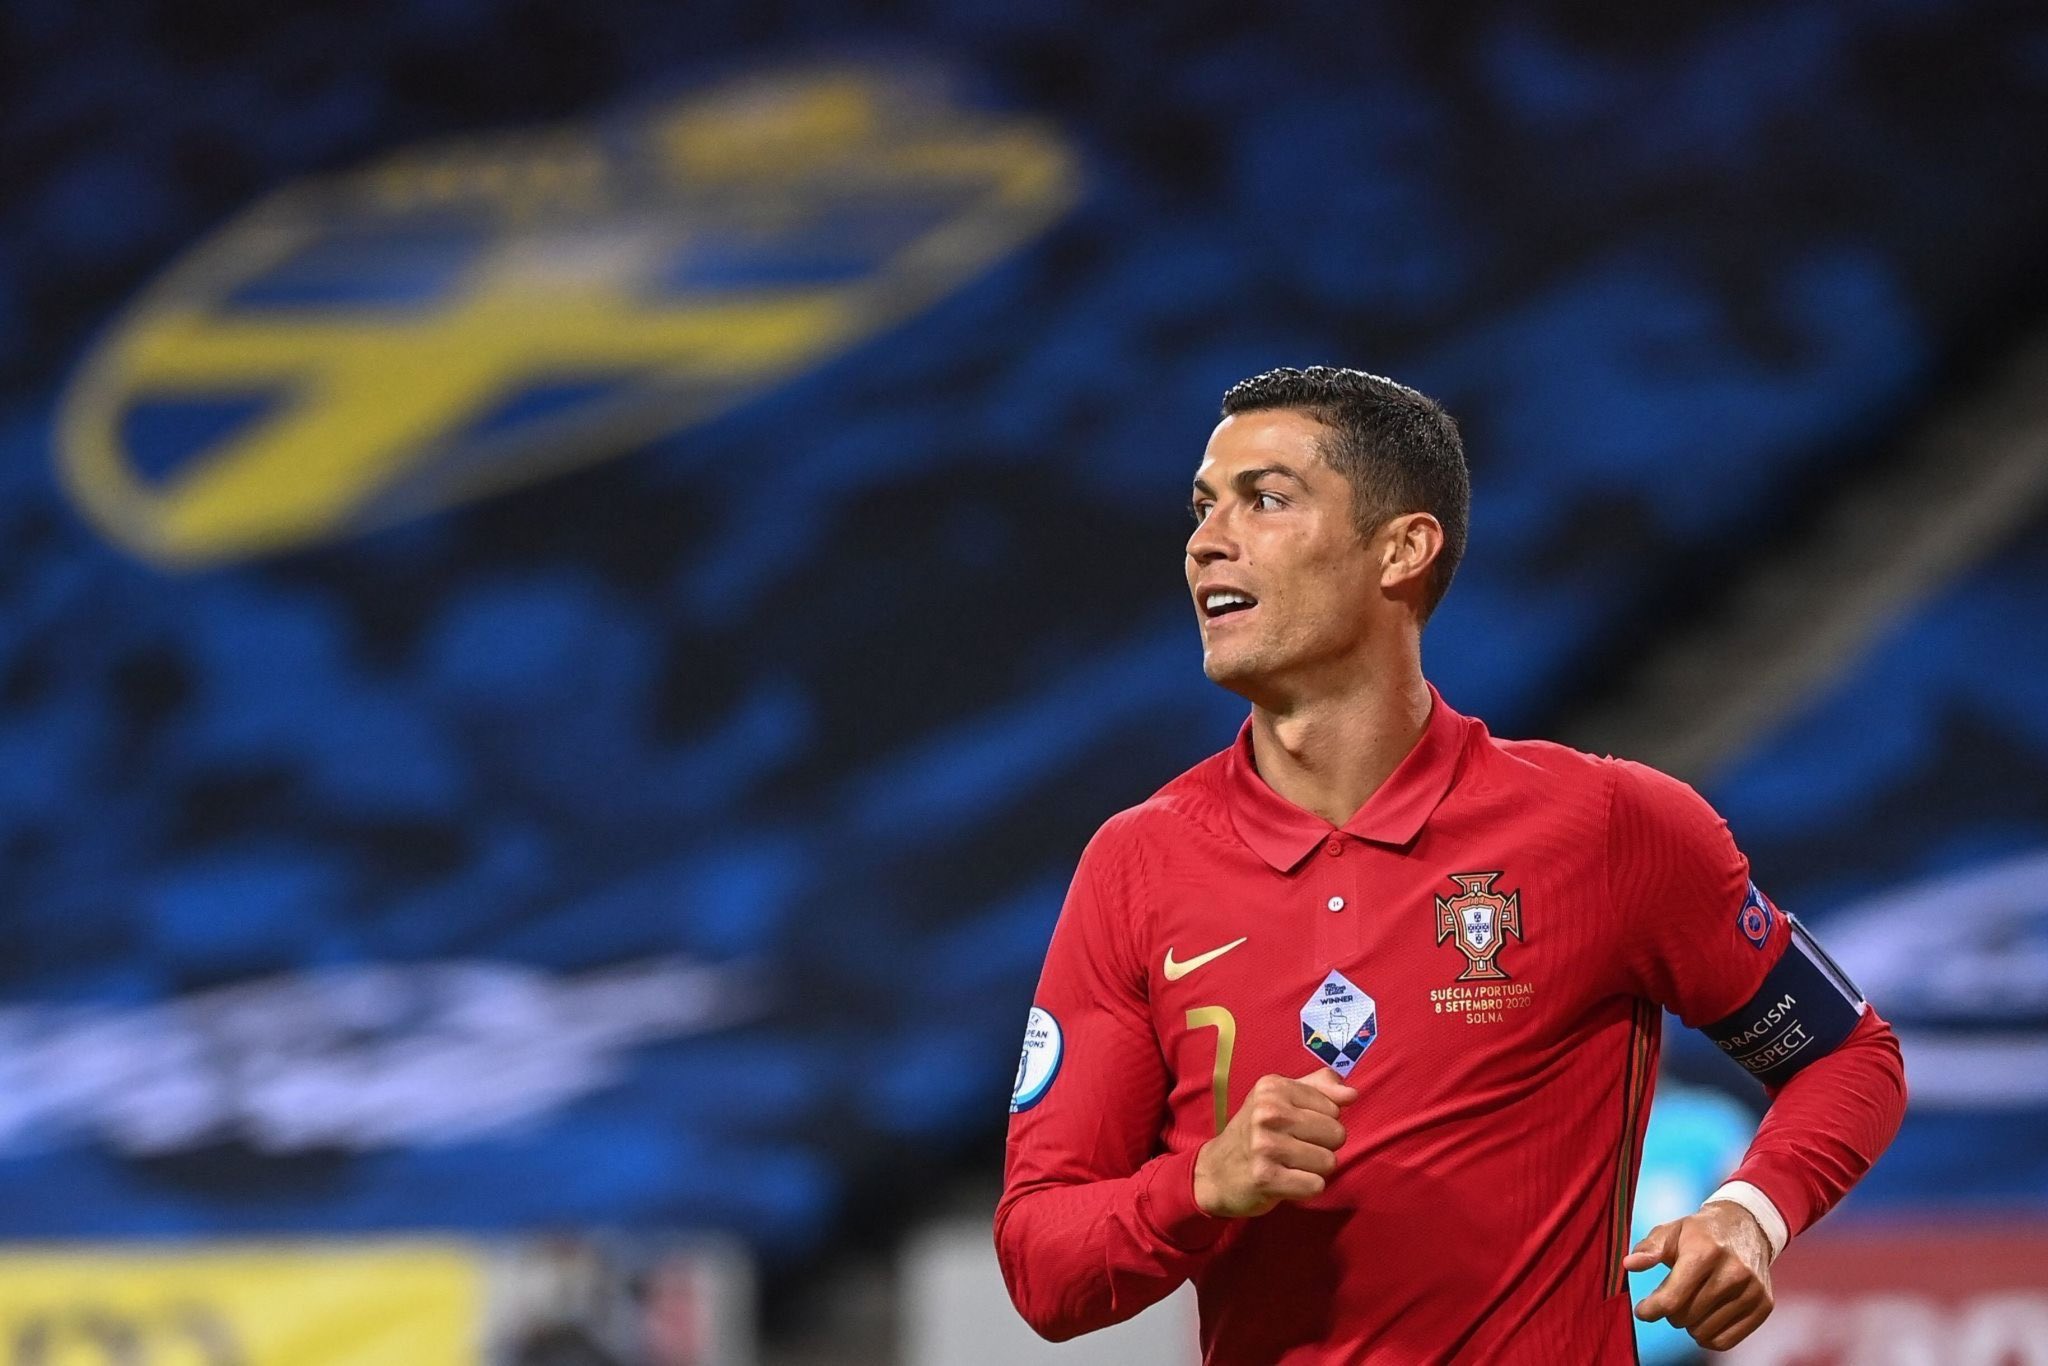 Brésil, France, Allemagne… Les six grandes nations contre lesquelles Ronaldo n’a pas encore marqué